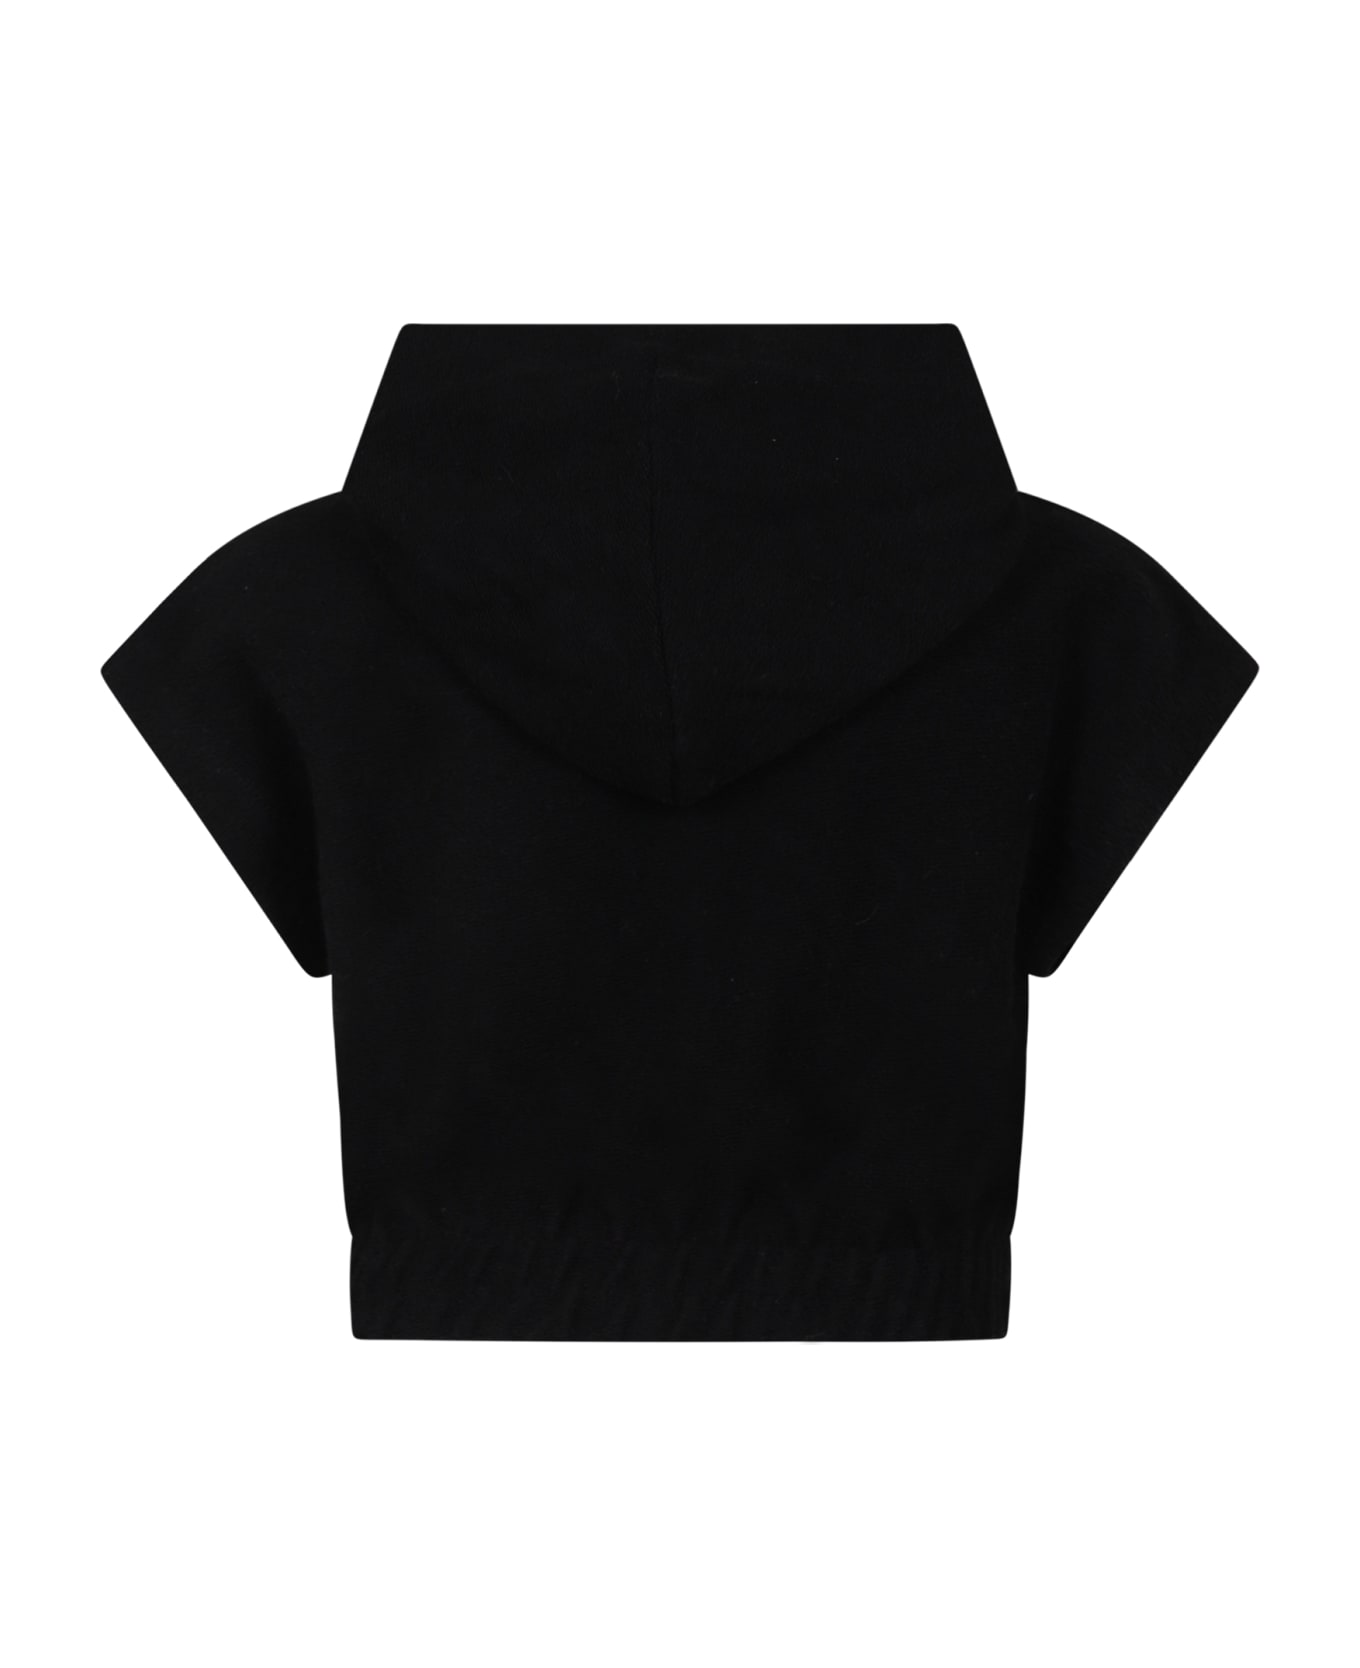 MSGM Black Sweatshirt For Girl With Logo - Black ニットウェア＆スウェットシャツ